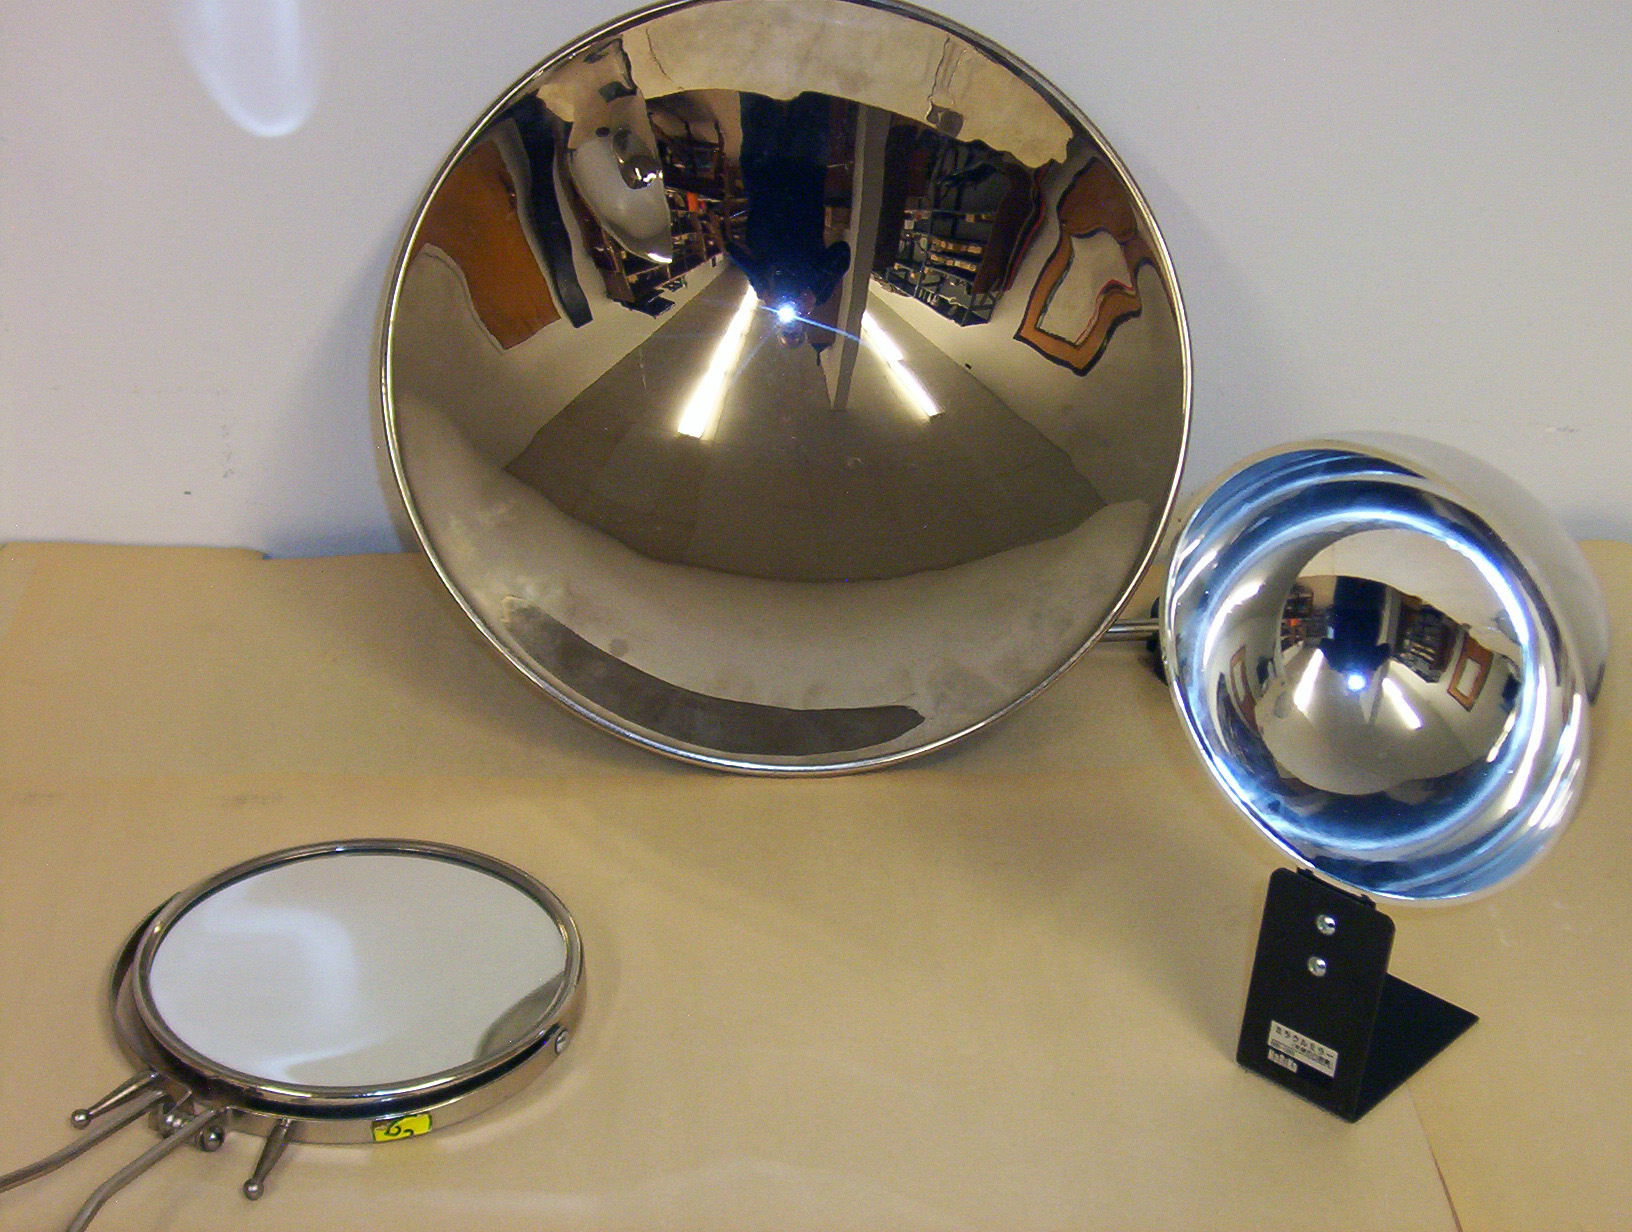 spherical mirror